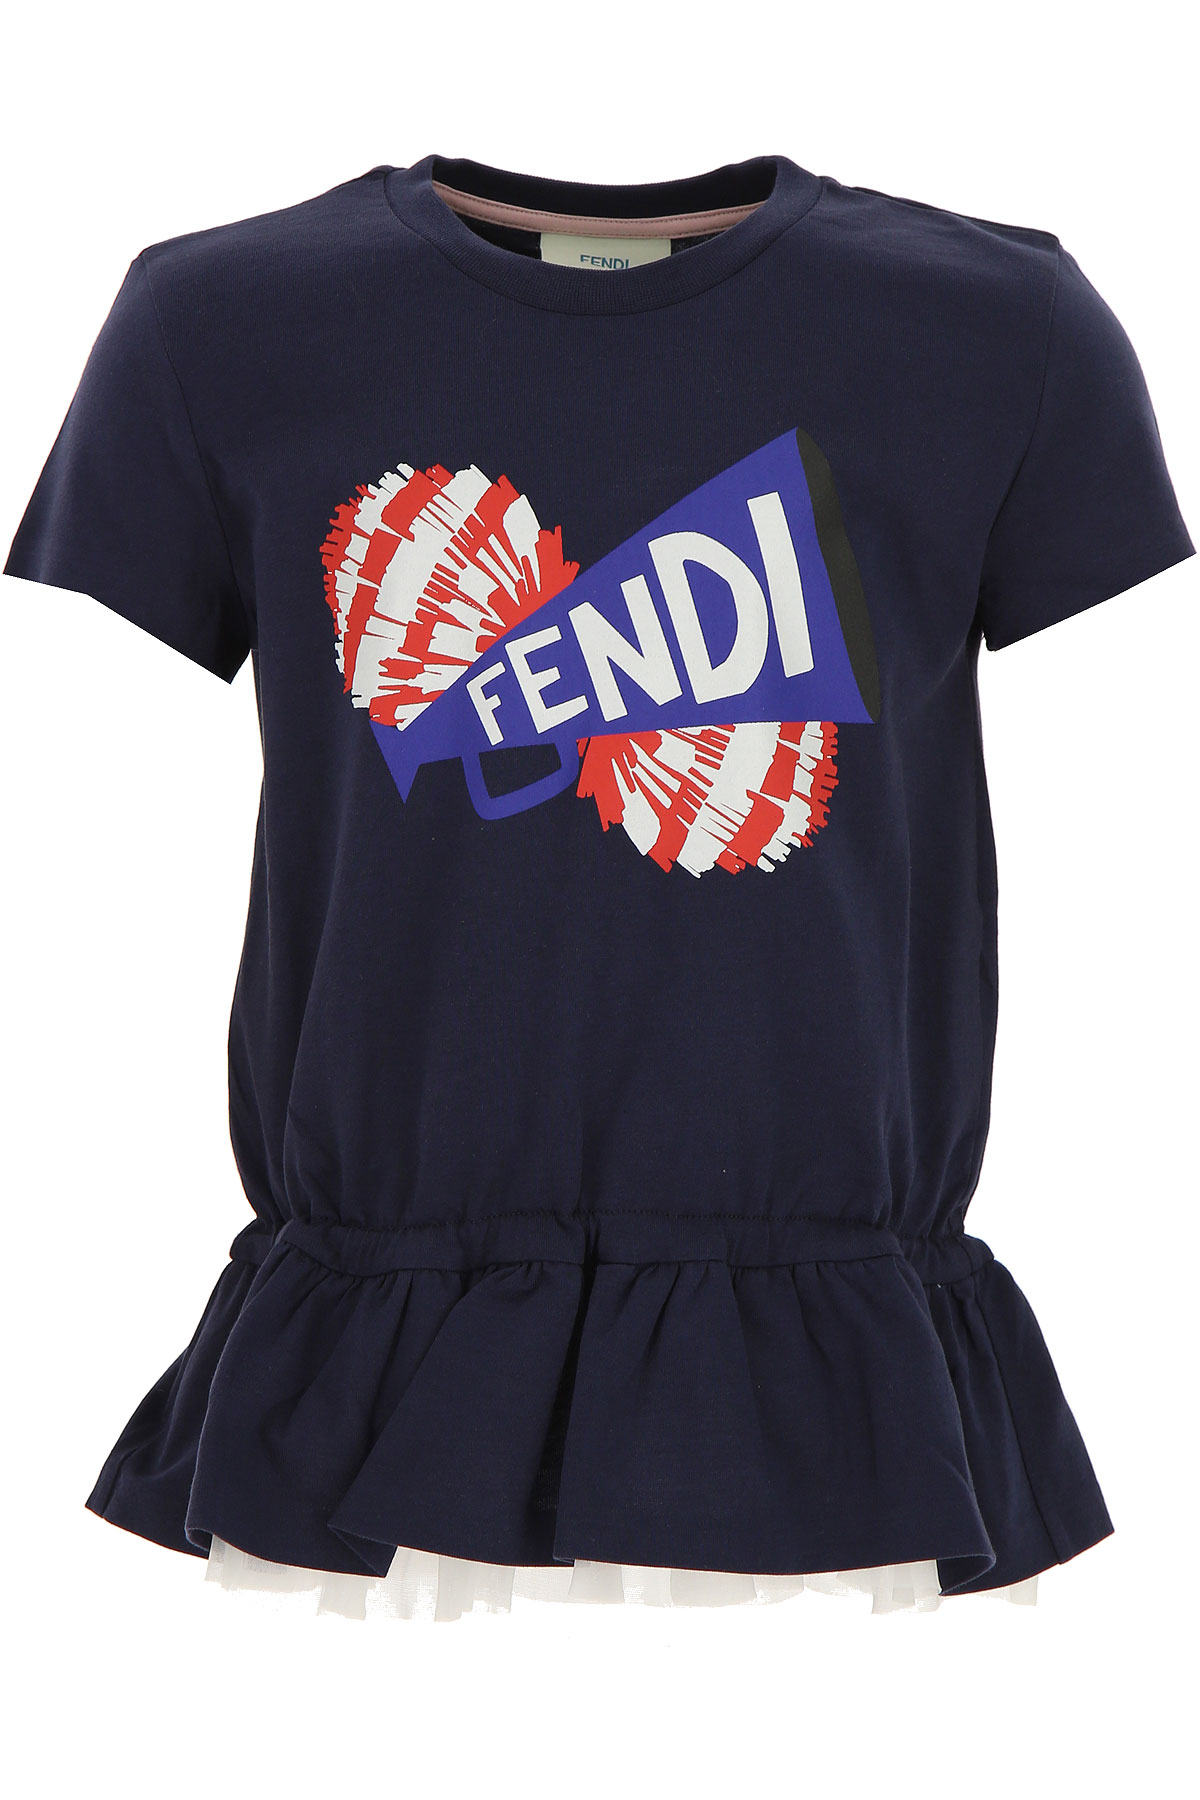 Fendi T-Shirt Enfant pour Fille, Bleu, Coton, 2017, 10Y 12Y 3Y 4Y 6Y 8Y